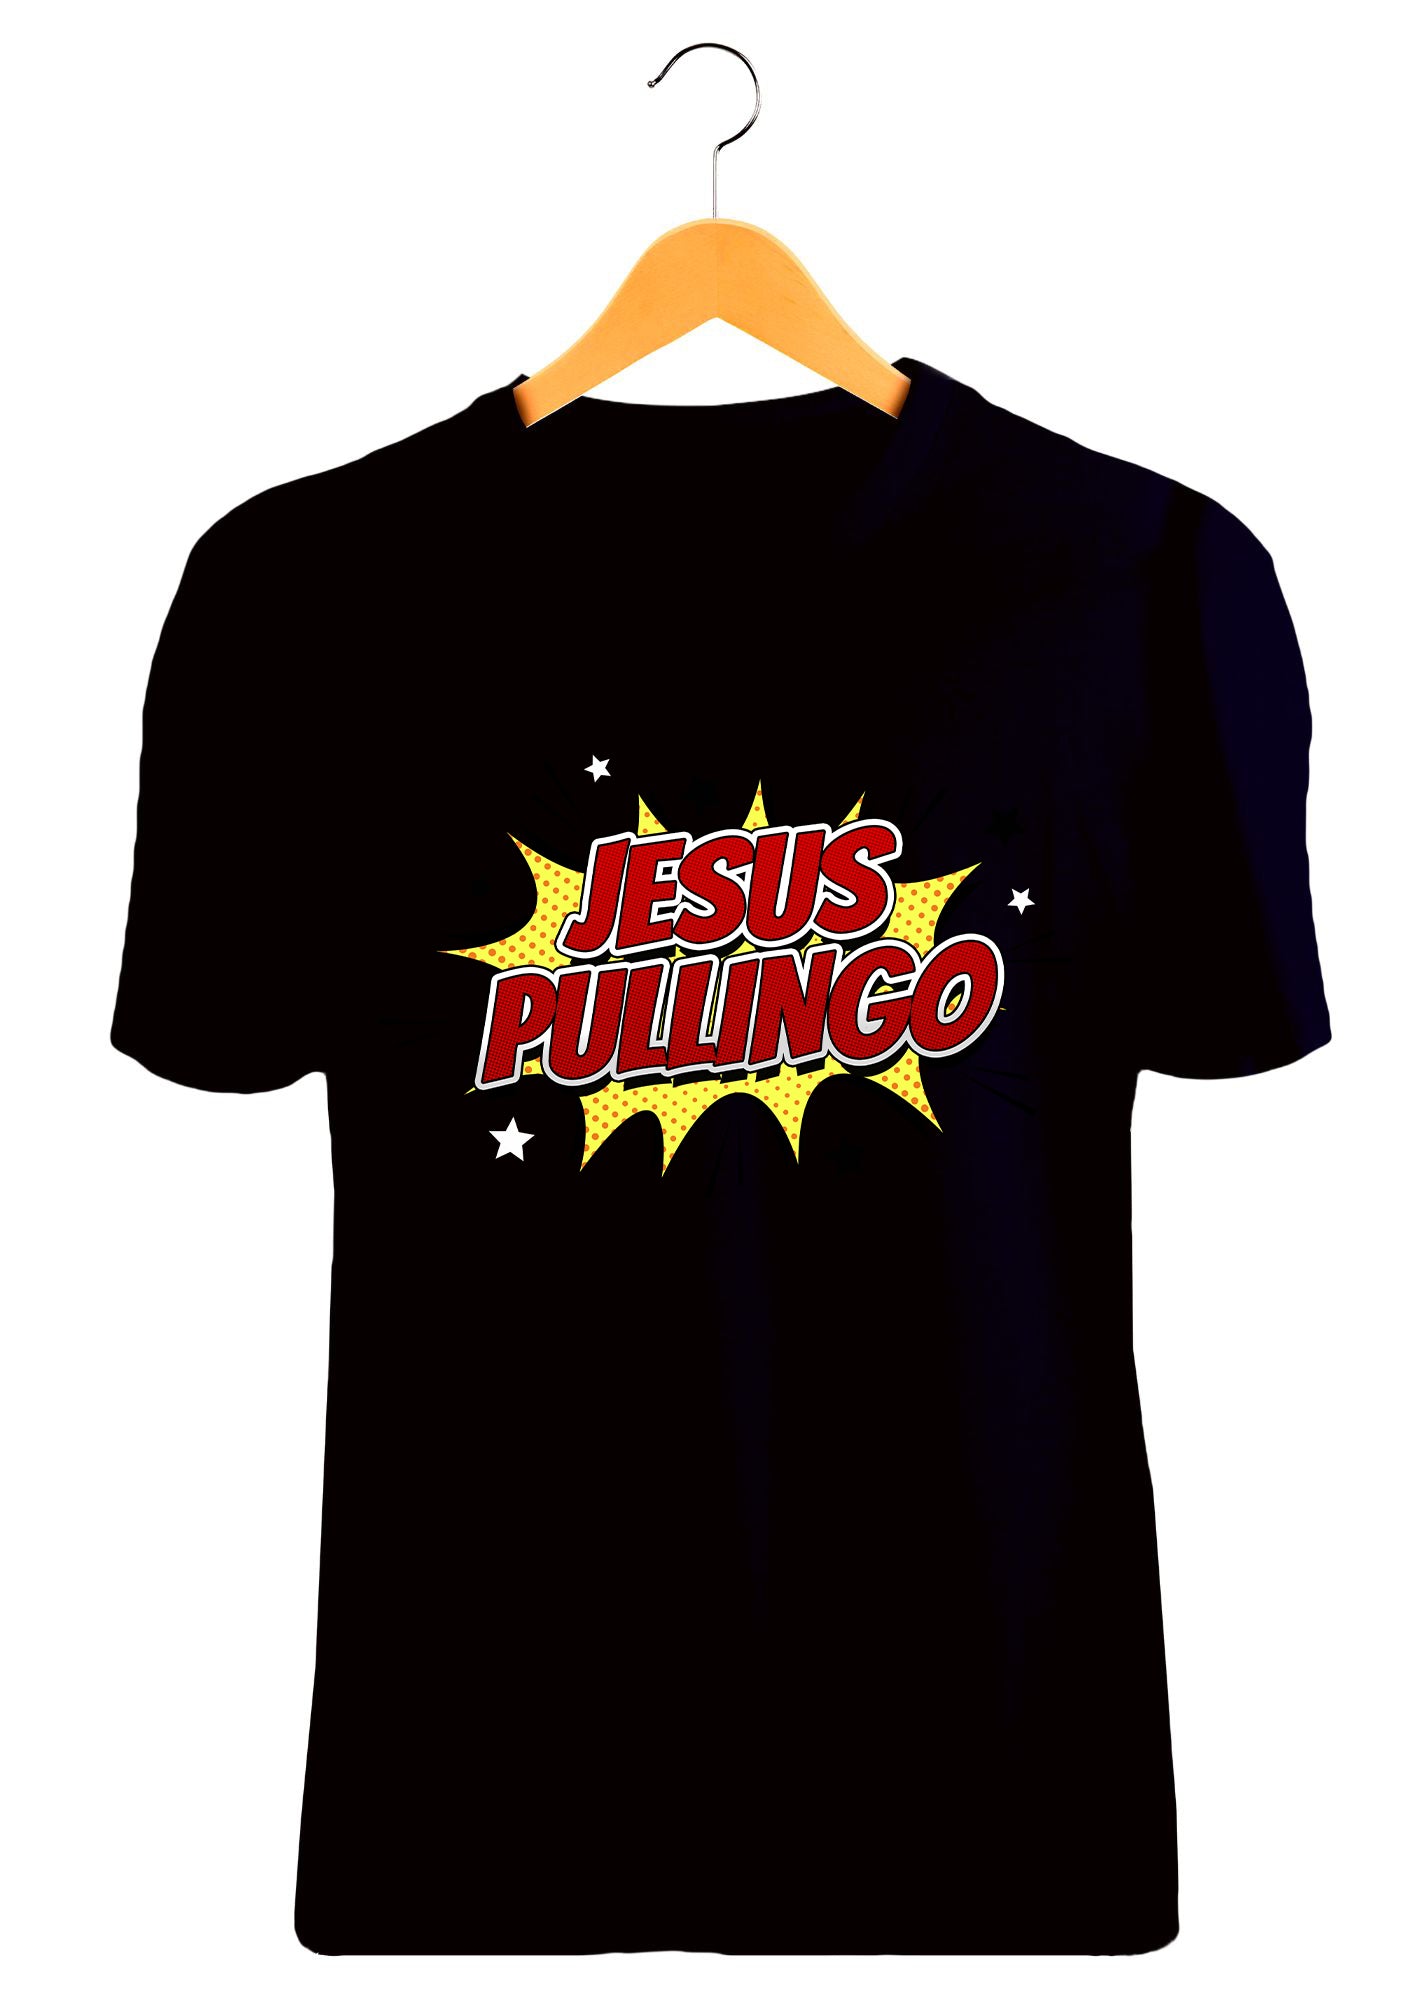 Jesus Pullingo